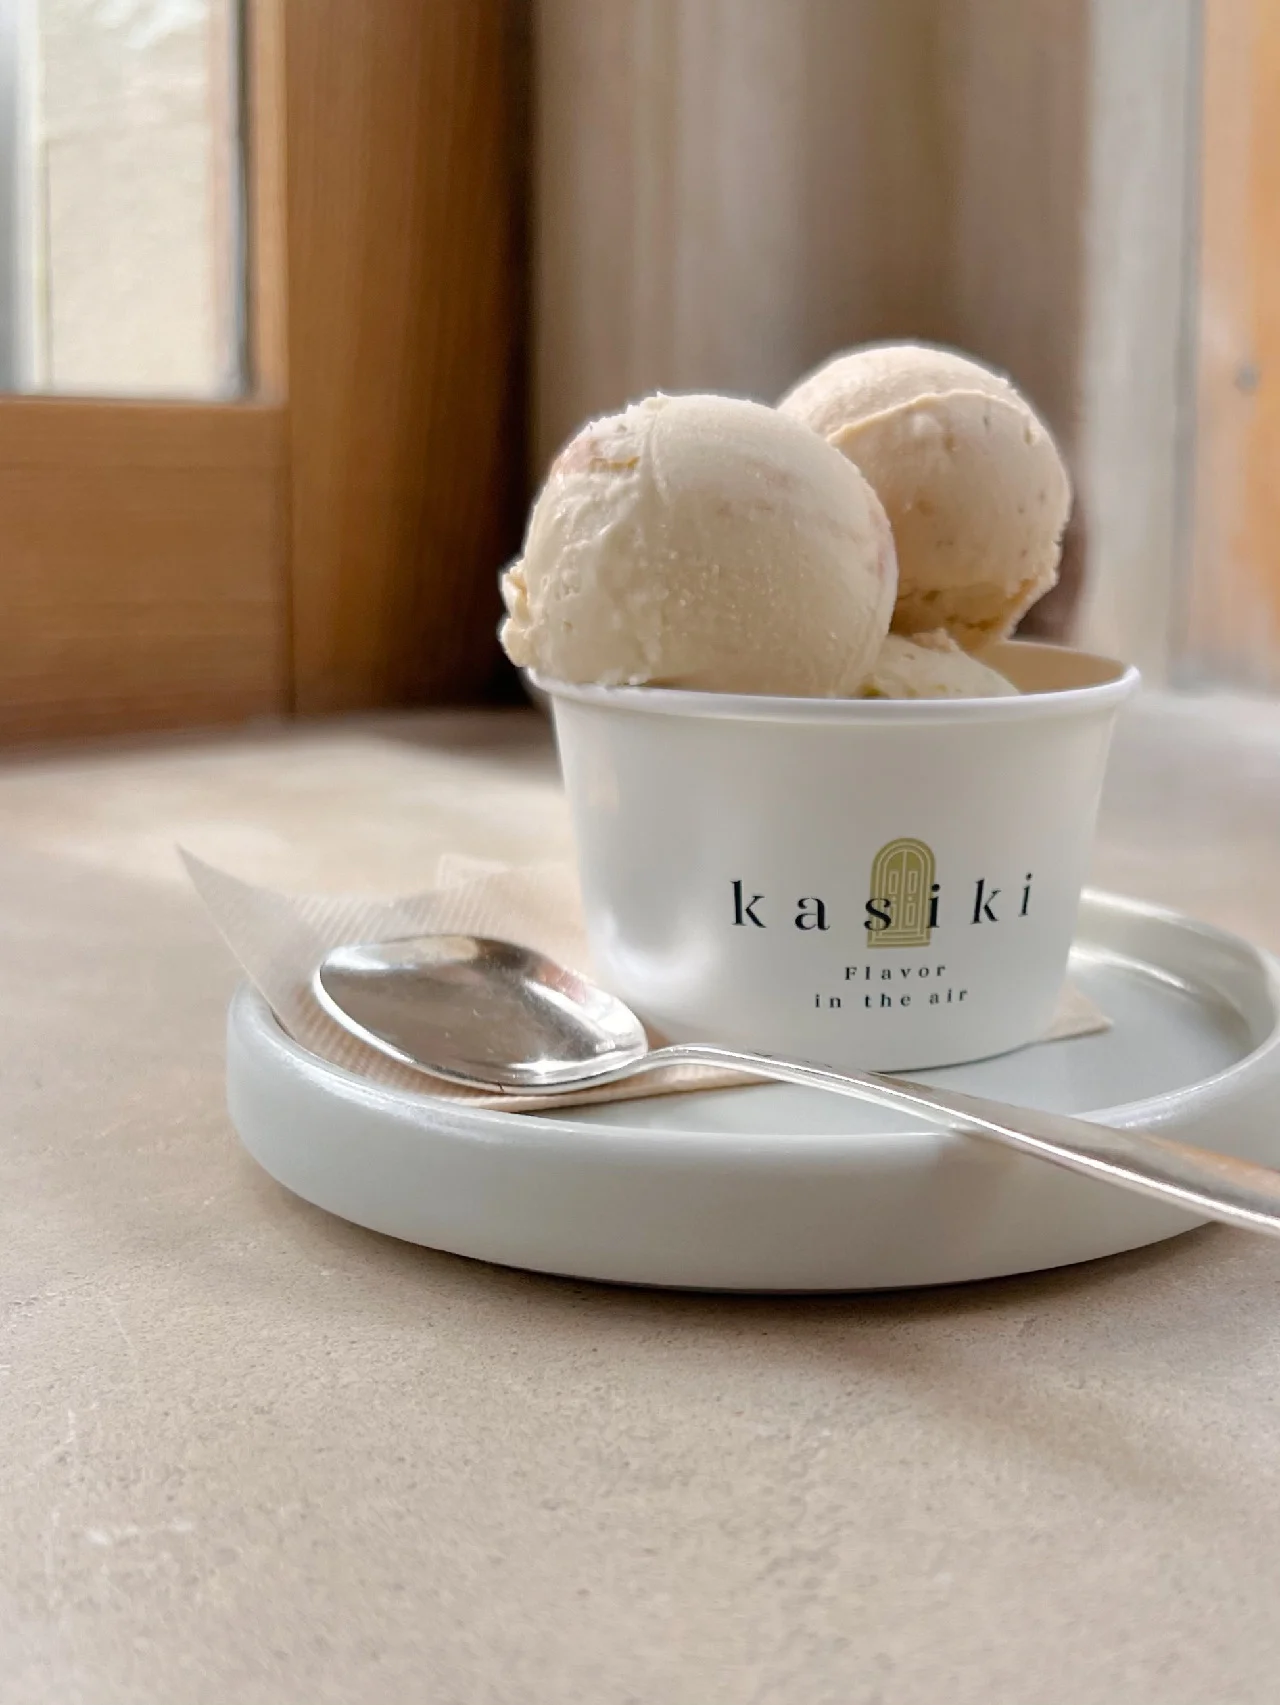 夏の終わりに至福の一口。幡ヶ谷【kasiki】のアイスで味わう驚きのフレーバー